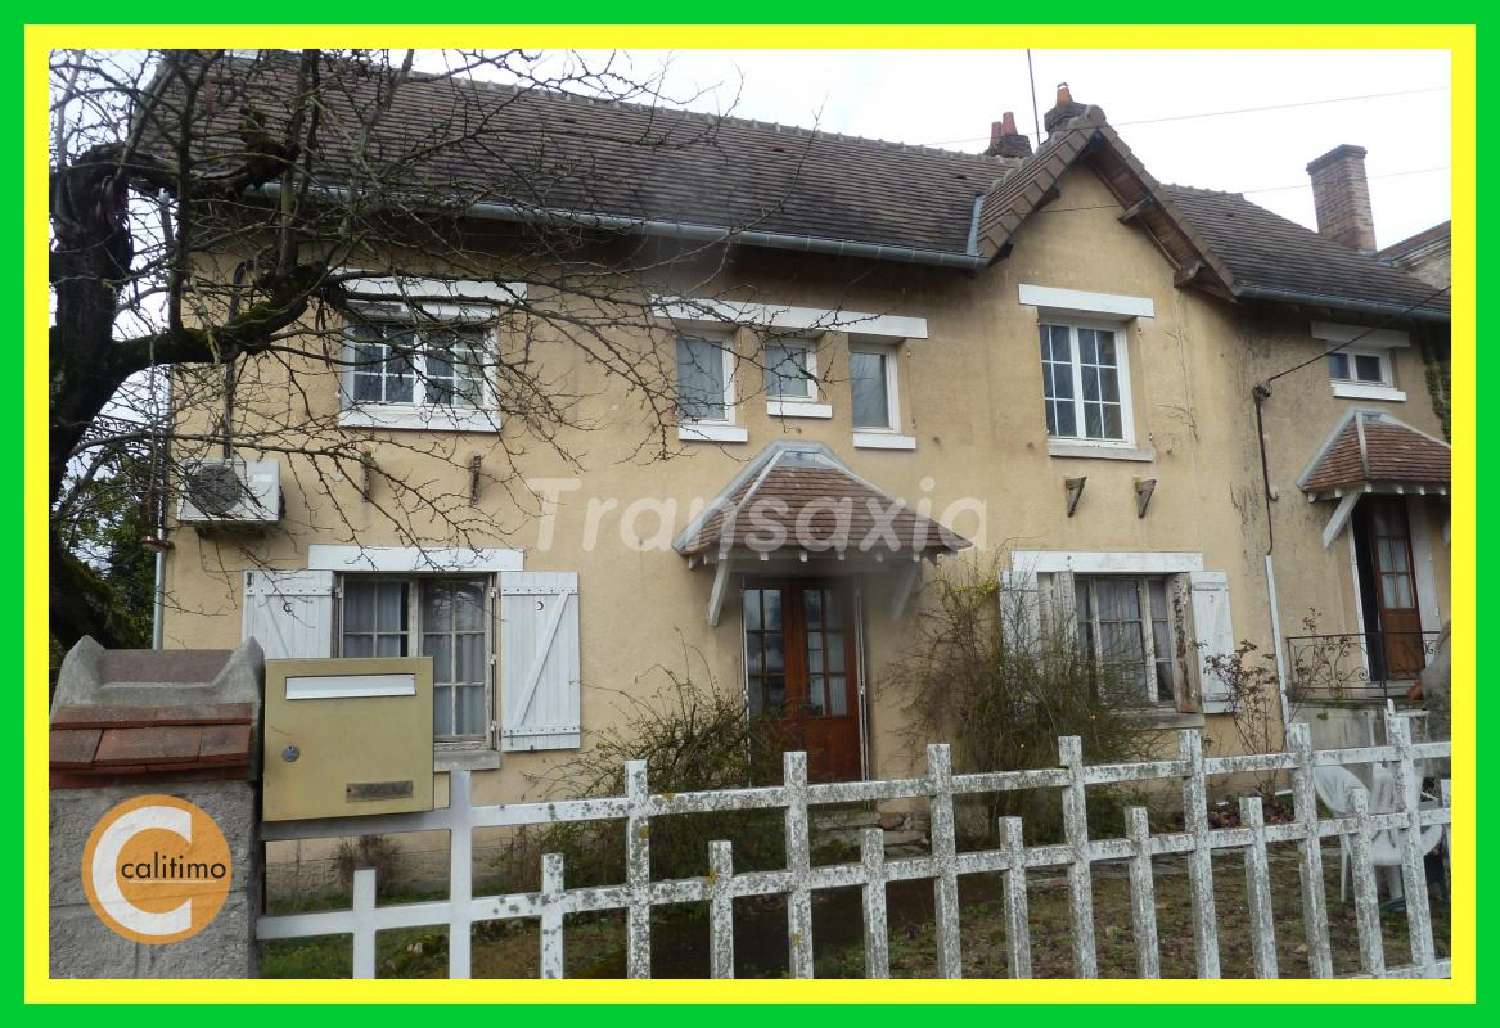  à vendre maison bourgeoise Lamotte-Beuvron Loir-et-Cher 1